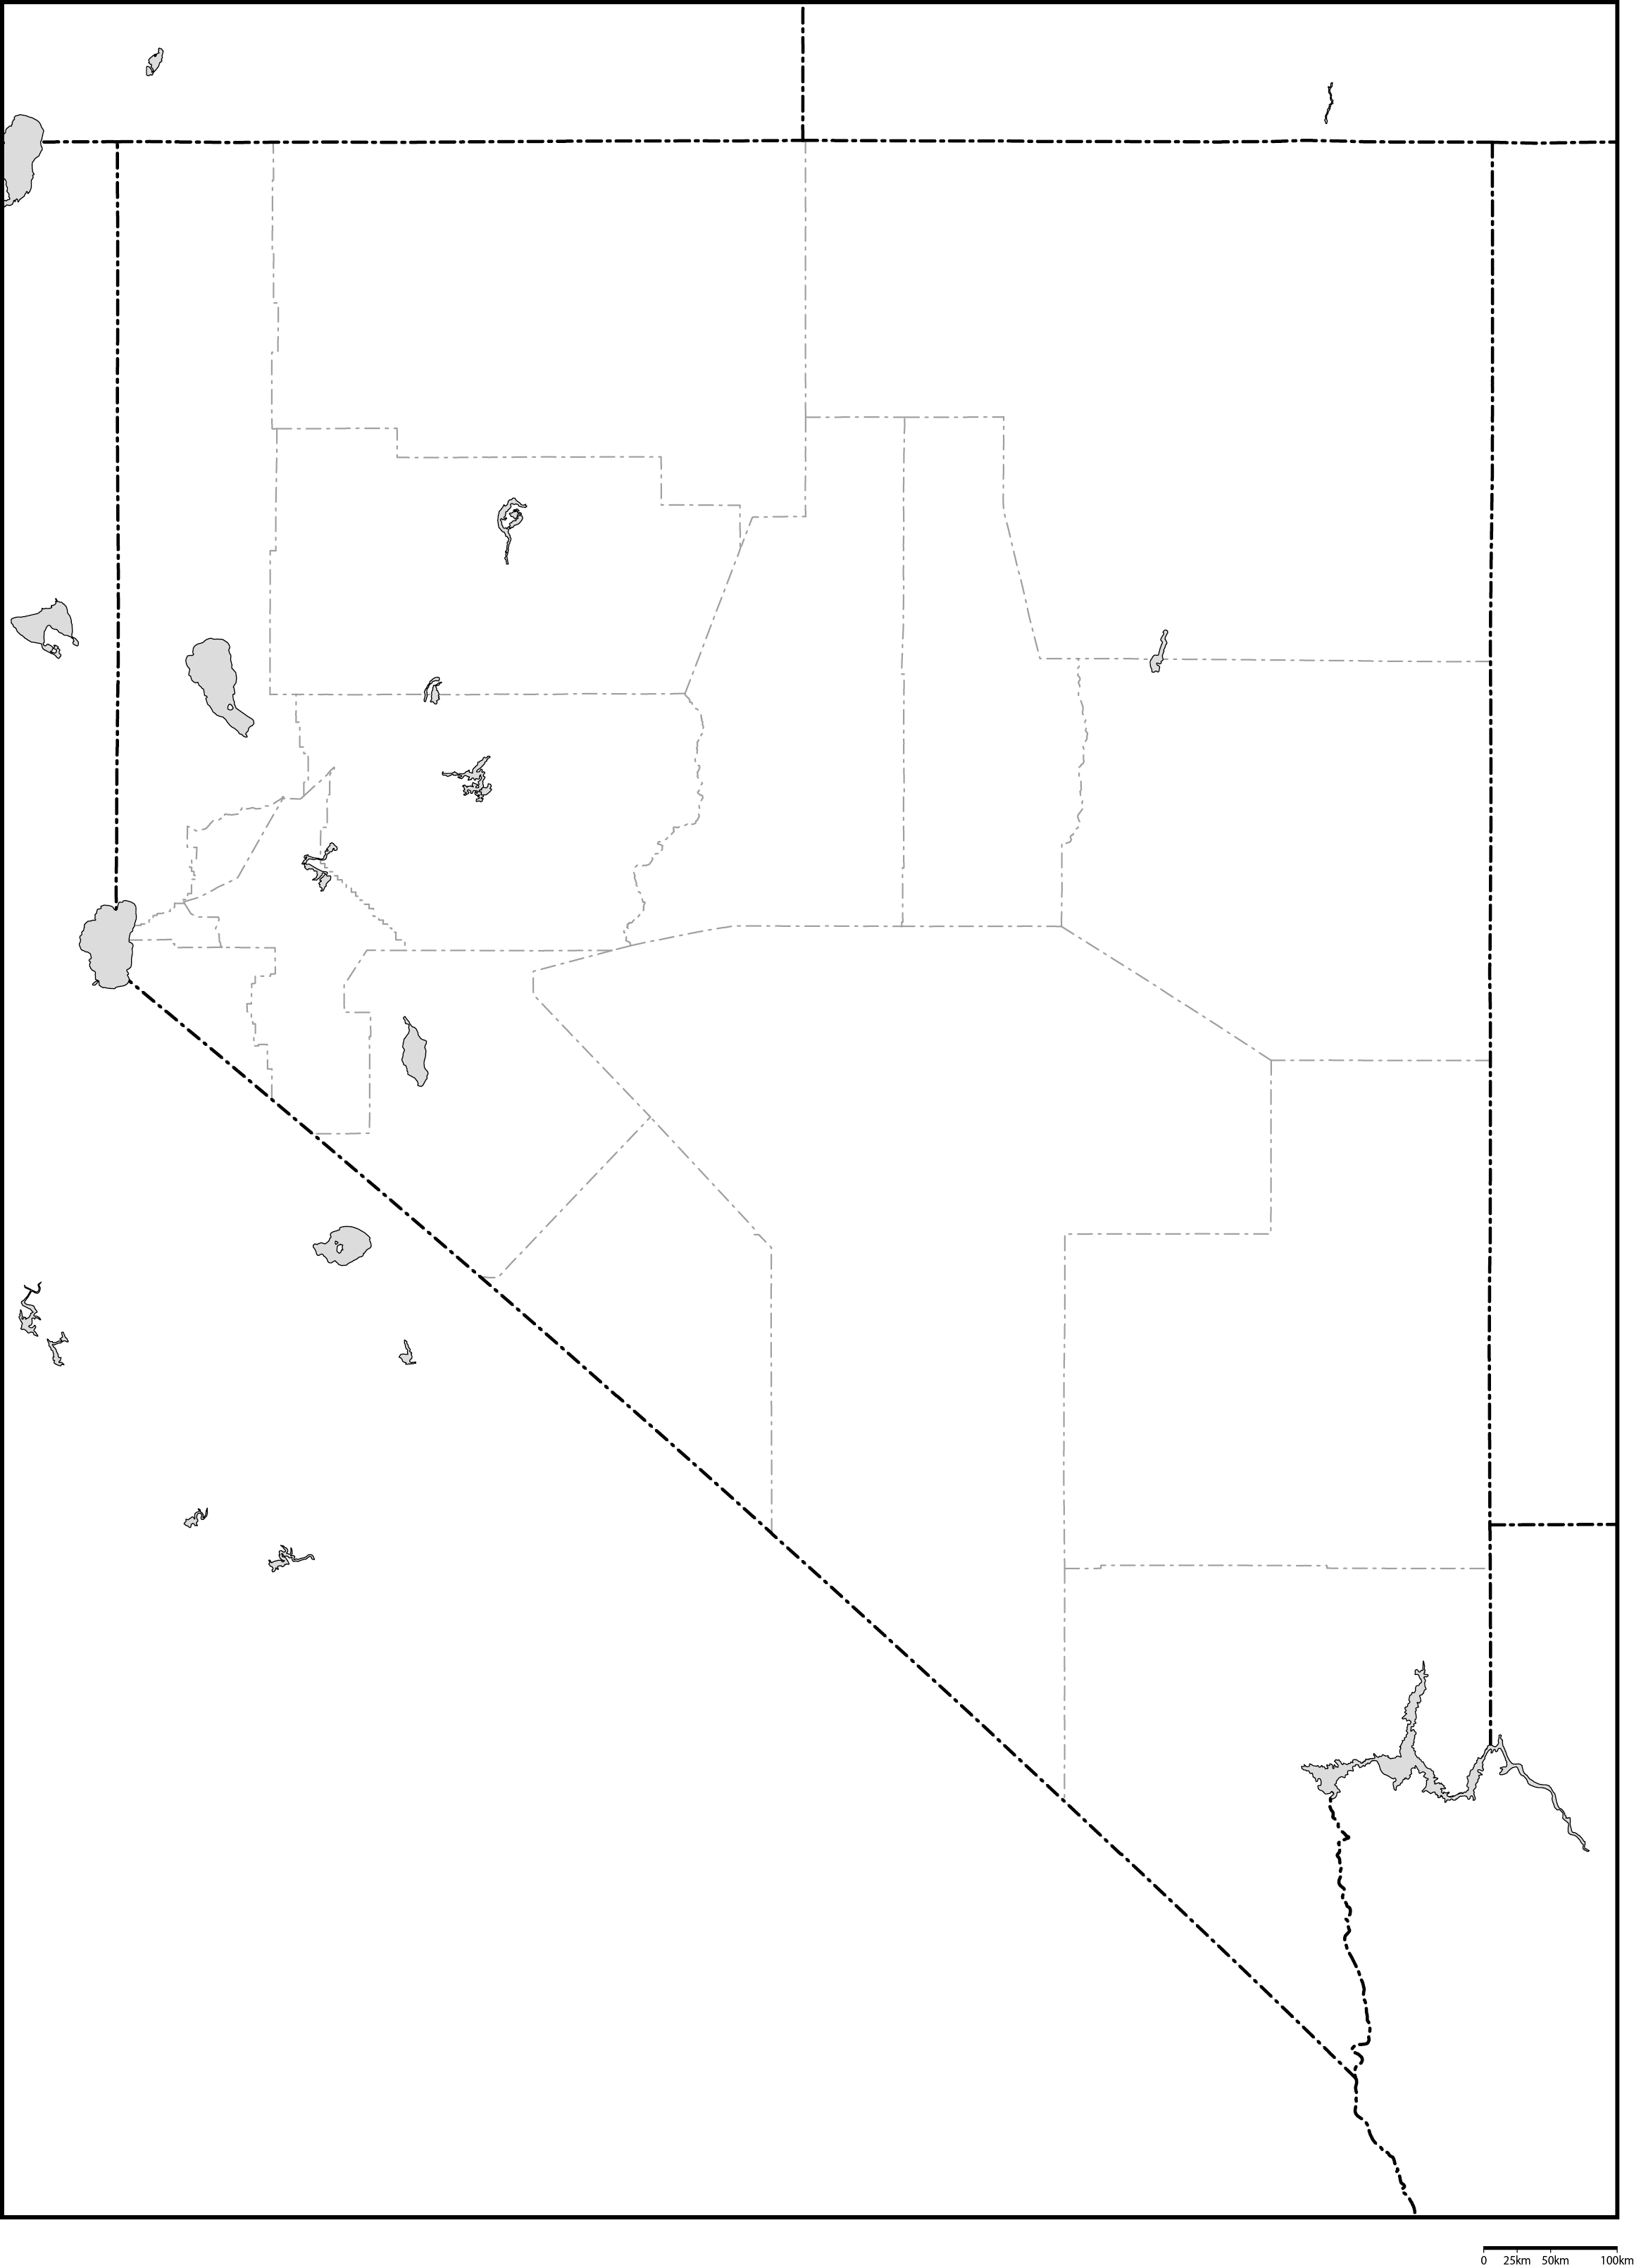 ネバダ州郡分け白地図フリーデータの画像